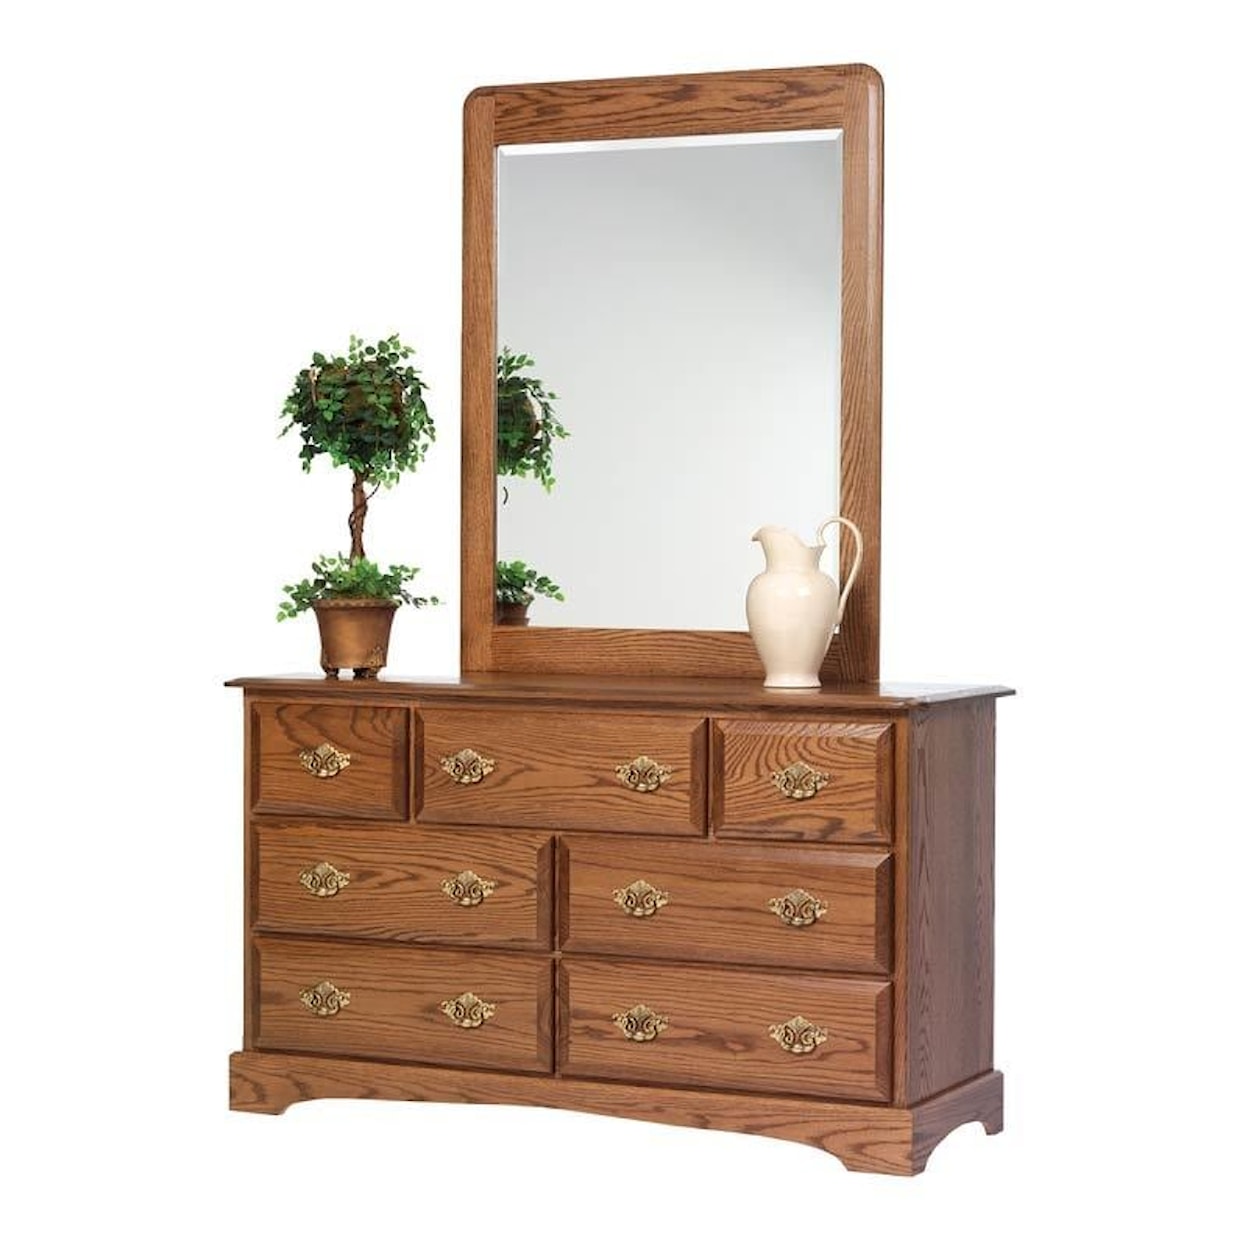 Millcraft Sierra Classic Dresser Mirror